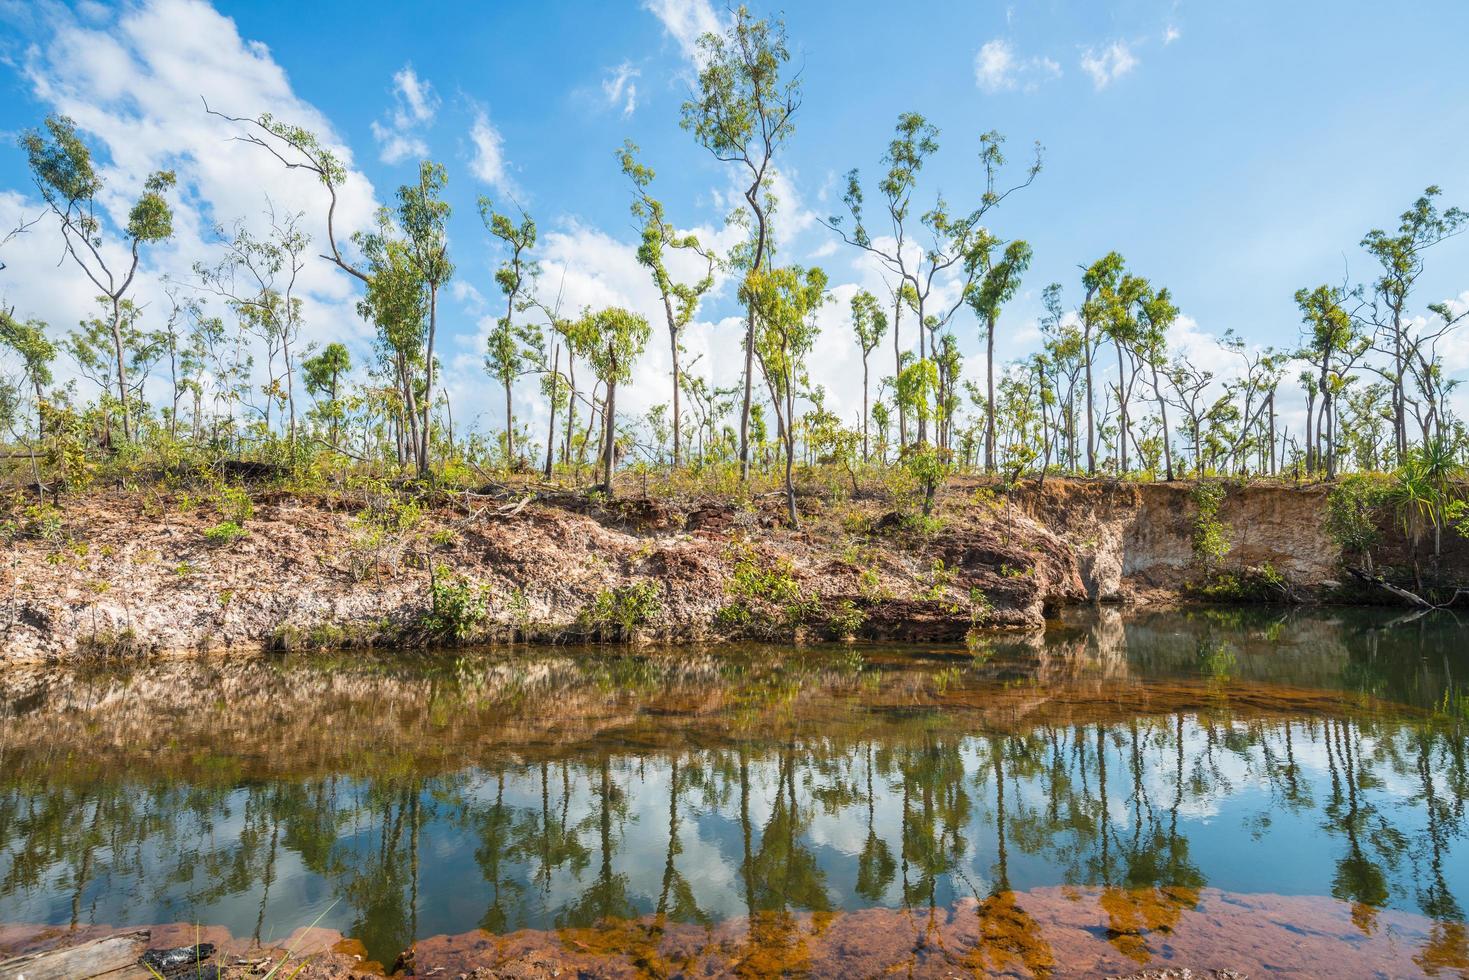 struiken reflectie op duizelingwekkende rivier van gove schiereiland, noordelijke territorium staat australië. foto